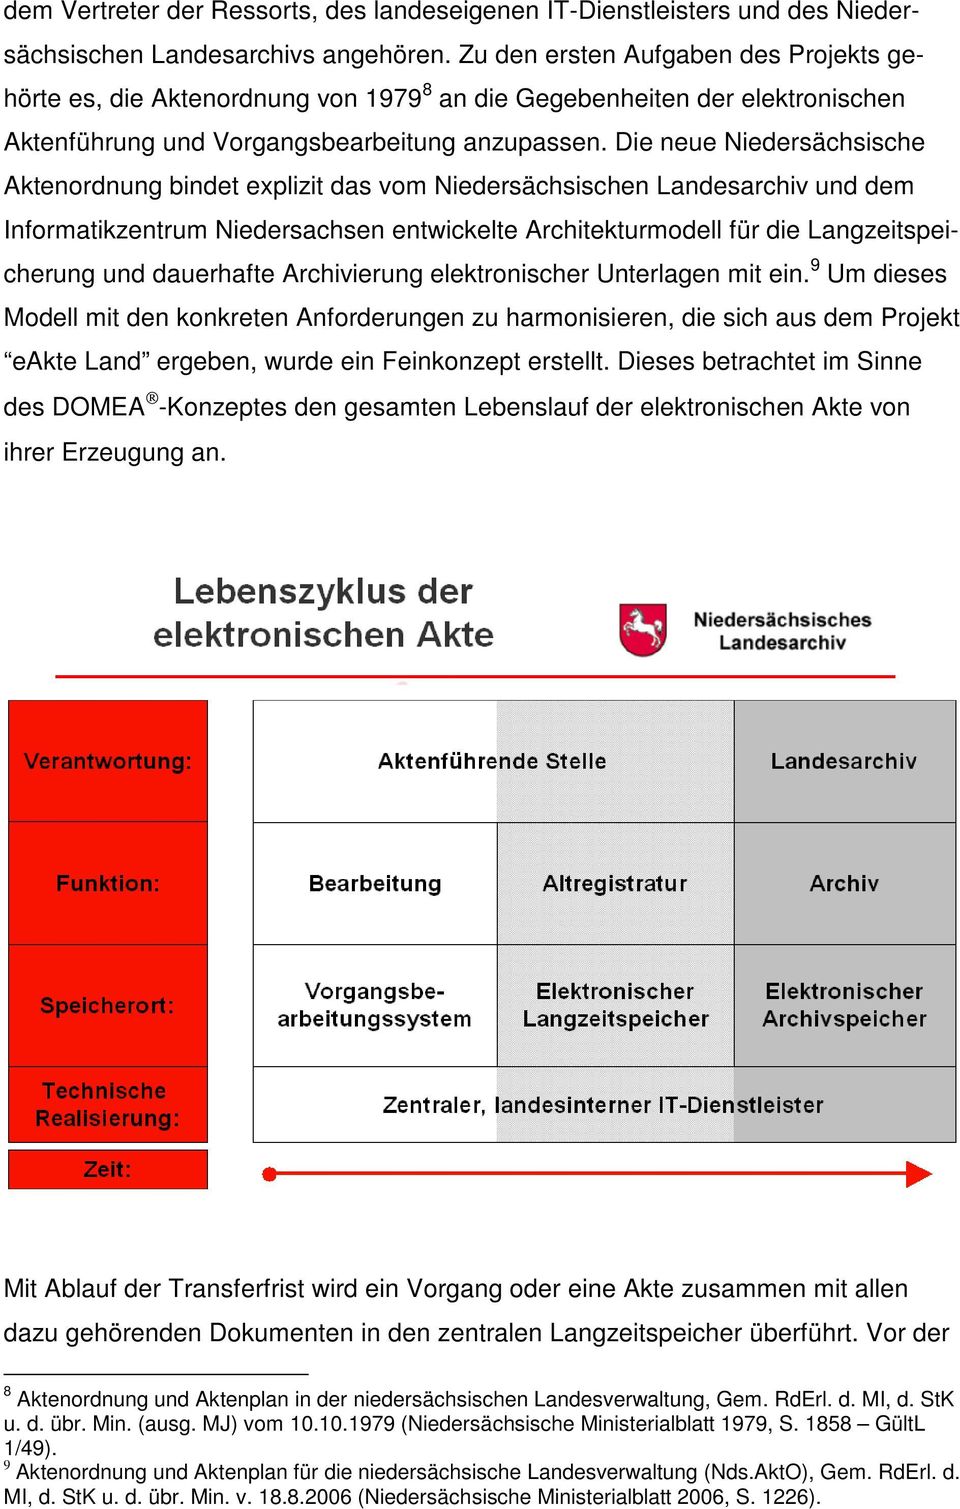 Die neue Niedersächsische Aktenordnung bindet explizit das vom Niedersächsischen Landesarchiv und dem Informatikzentrum Niedersachsen entwickelte Architekturmodell für die Langzeitspeicherung und